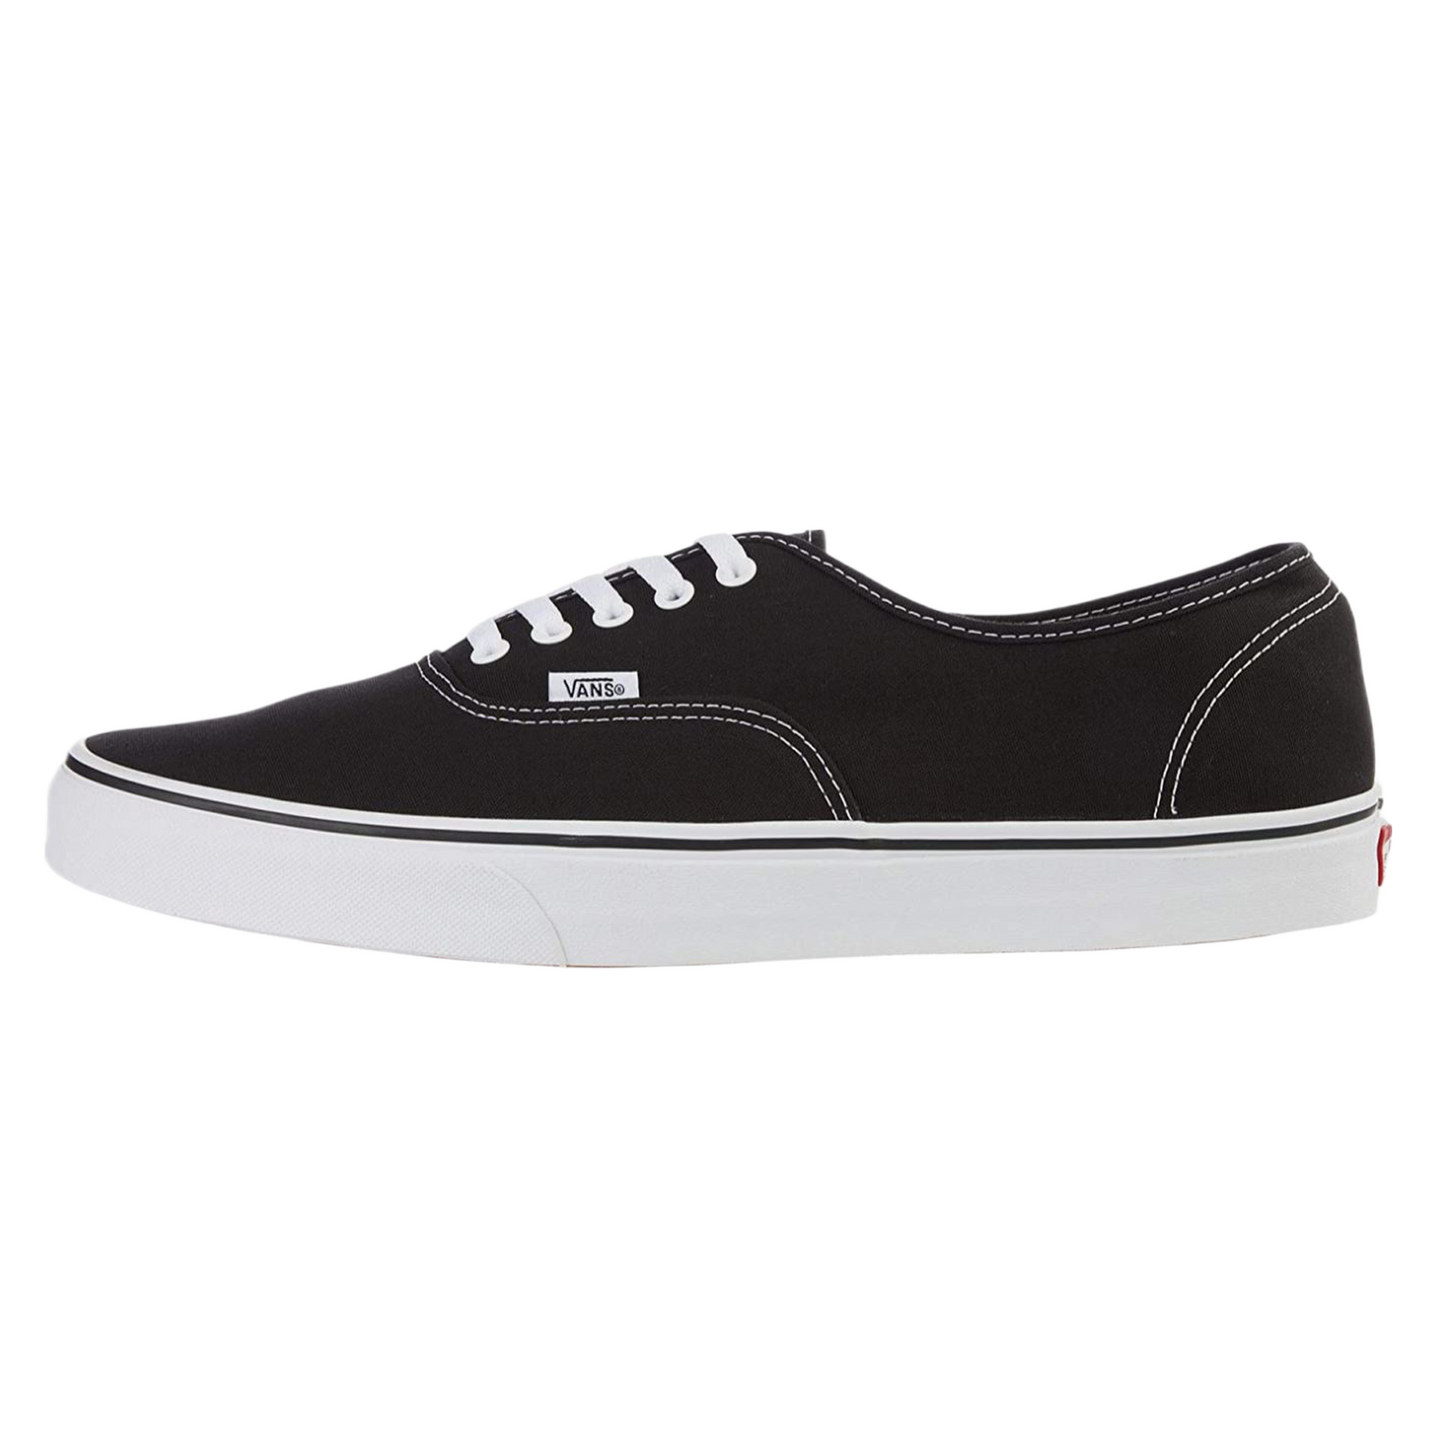 Vans Adult Unisex Authentic Shoes Black / White VN000EE3BLK